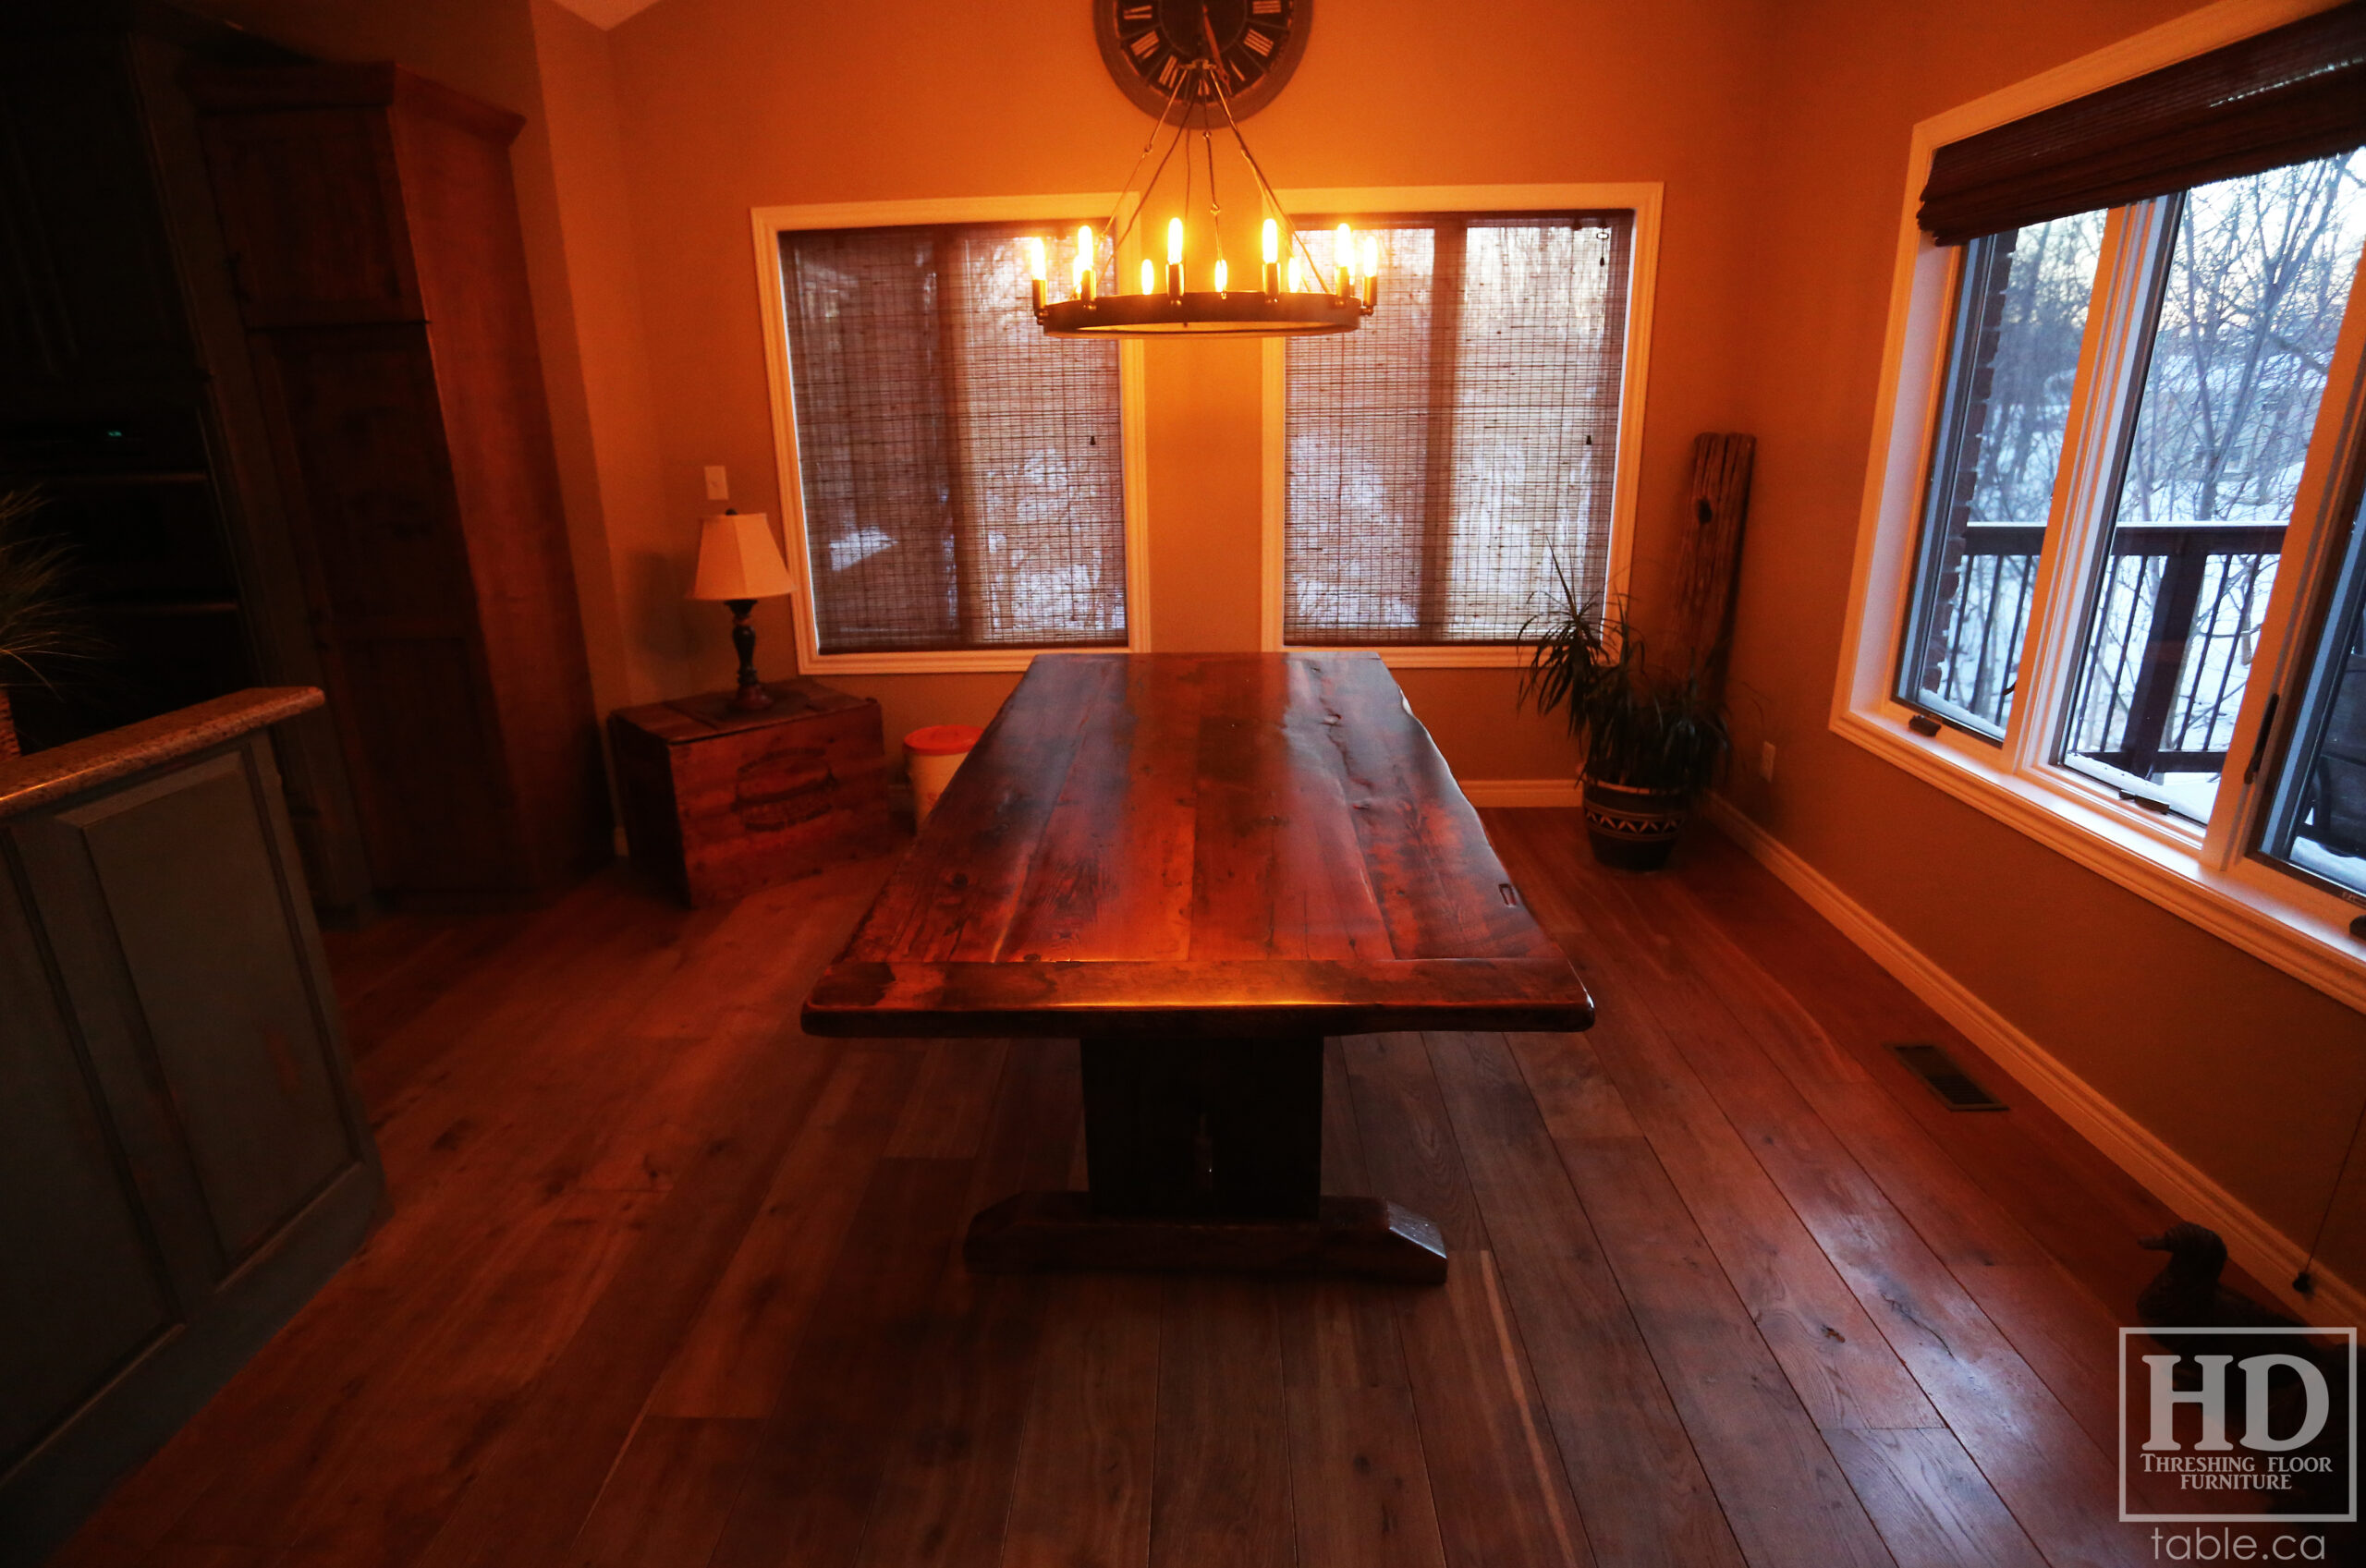 Hemlock Table by HD Threshing Floor Furniture / www.table.ca